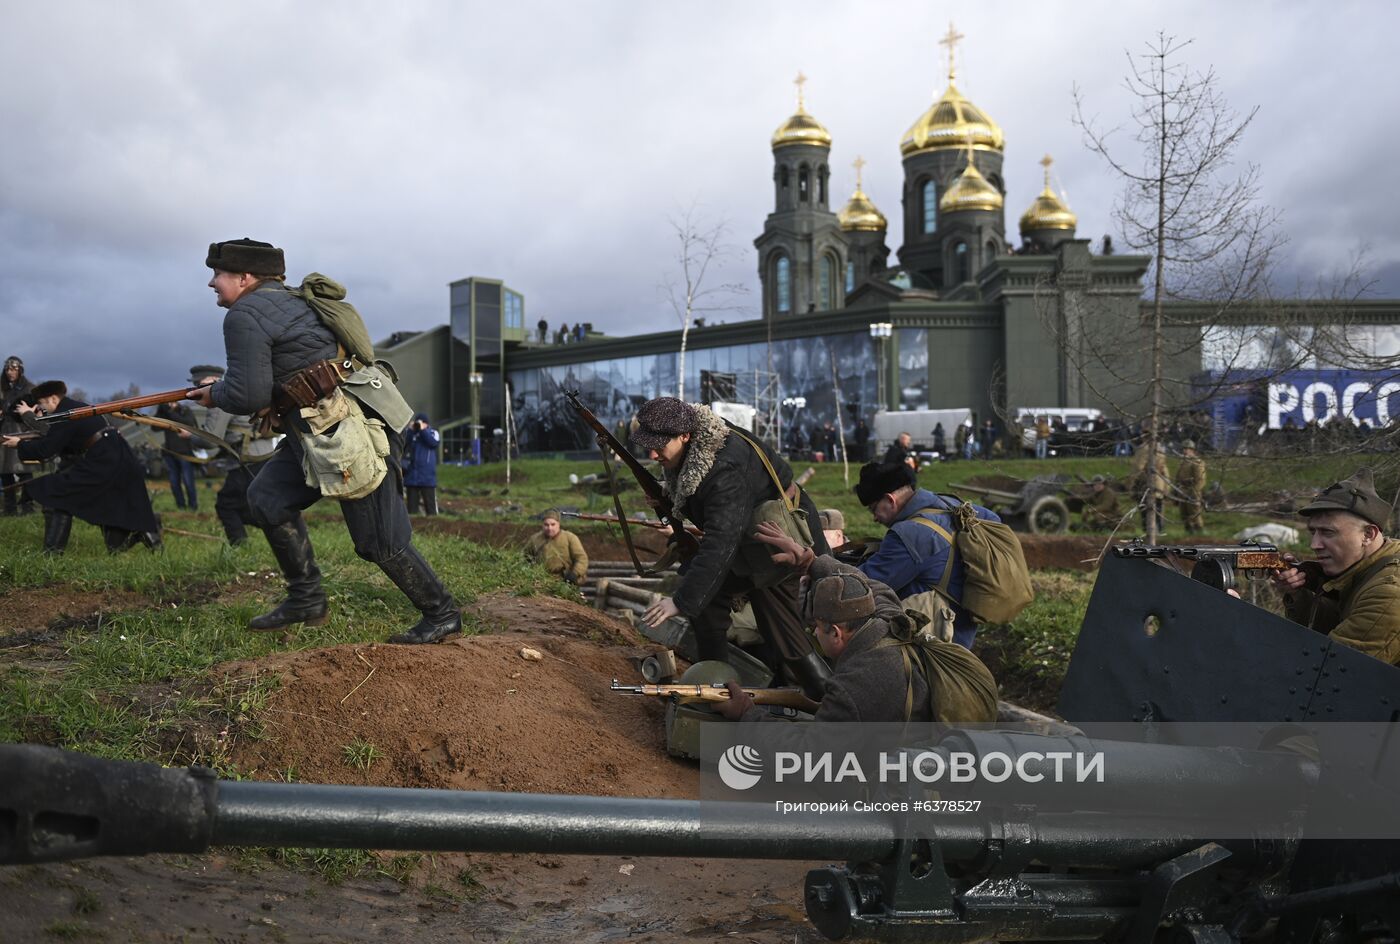 Реконструкция сражений за Москву в Подмосковье